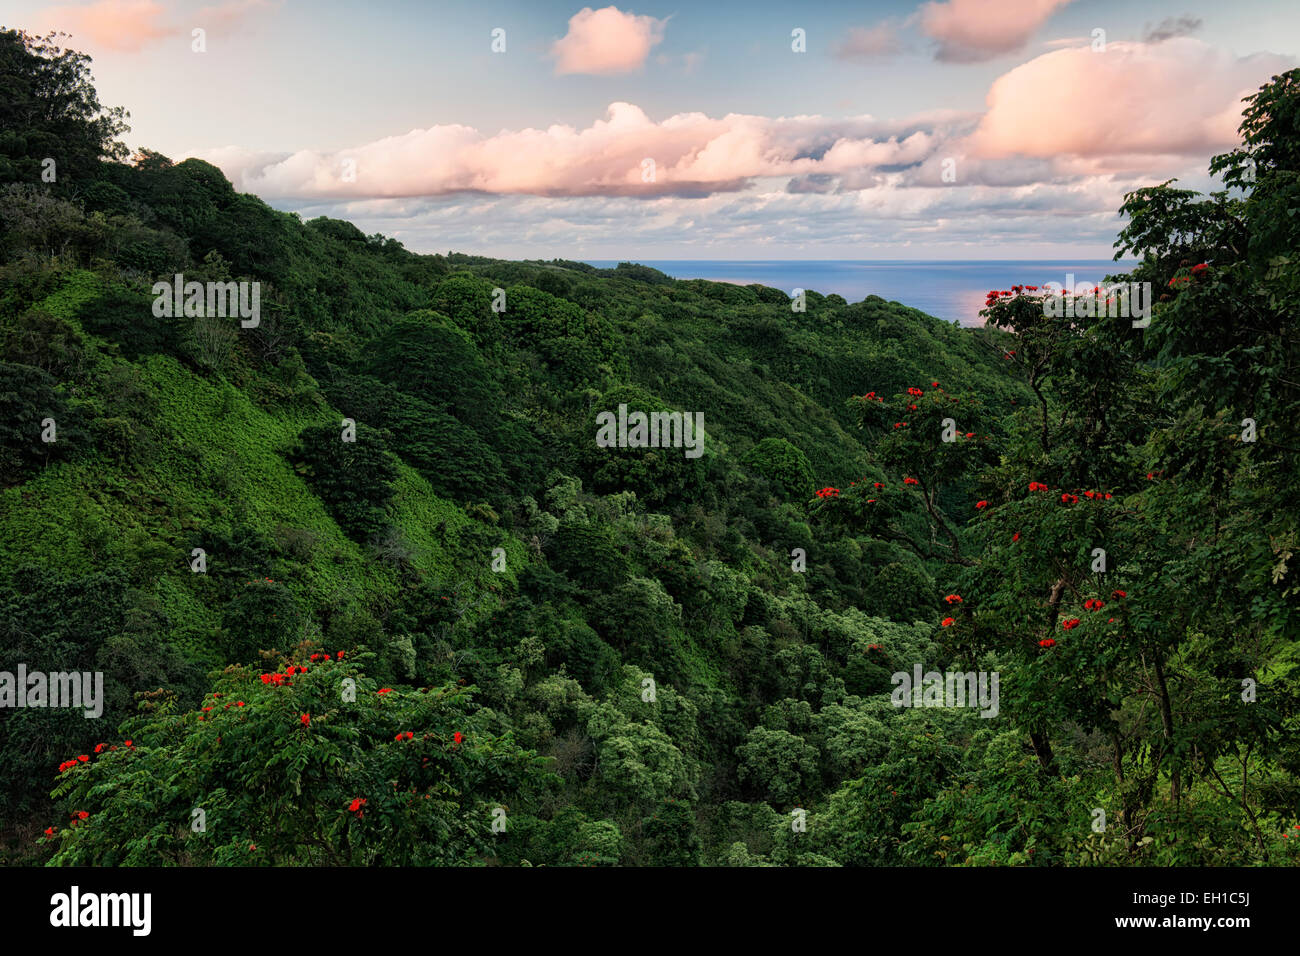 Die Straße nach Hana bietet spektakuläre Ausblicke auf die üppige Vegetation und dem Pazifischen Ozean auf Hawaii Insel Maui. Stockfoto